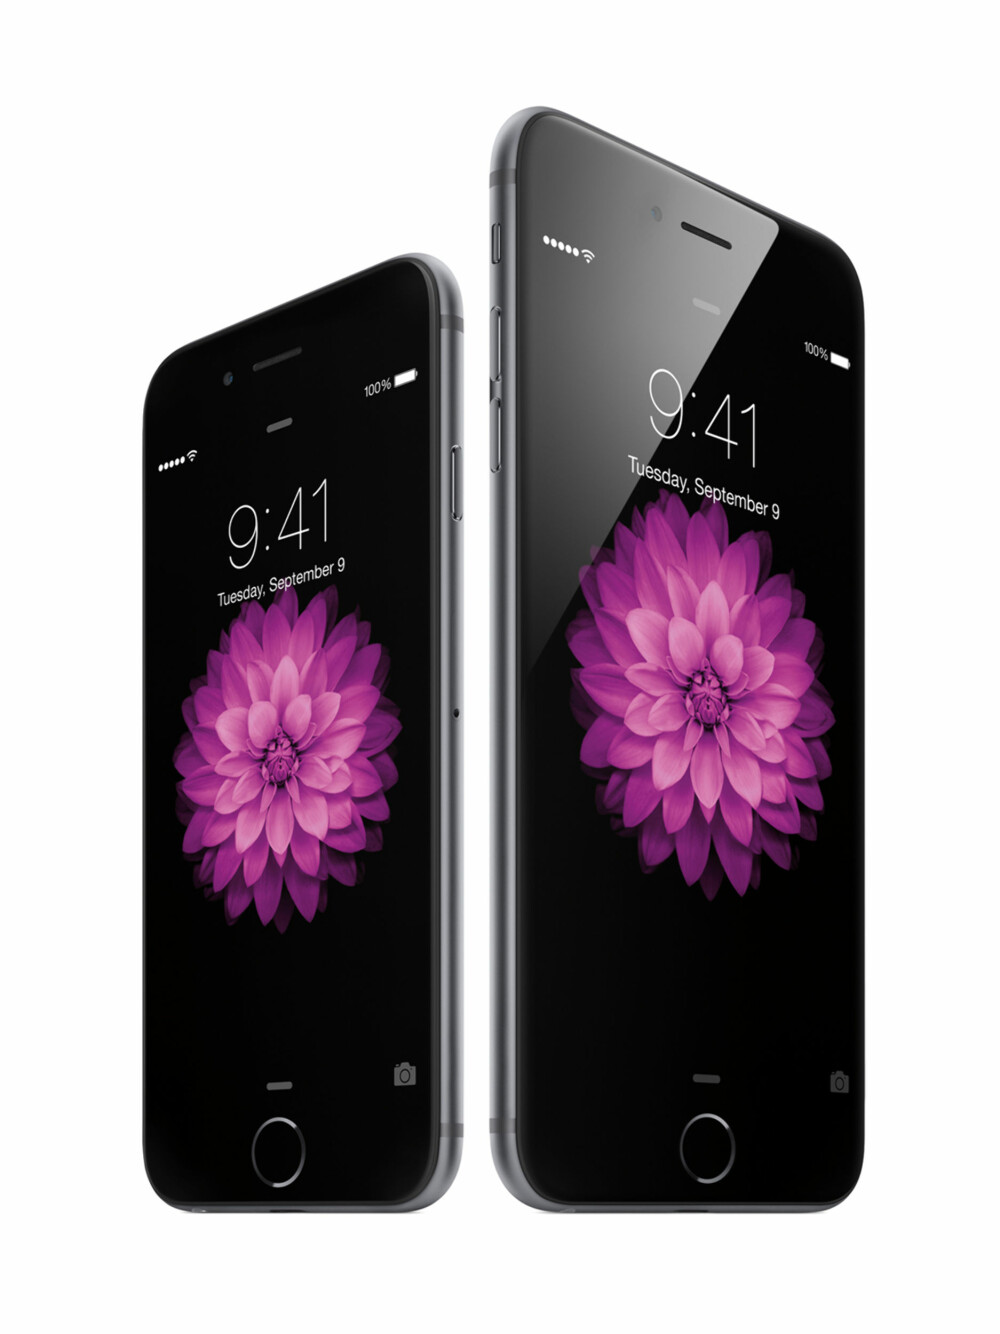 AVRUNDET: Nye iPhone 6 får en mer avrundet form enn det vi kjenner fra iPhone 5S.